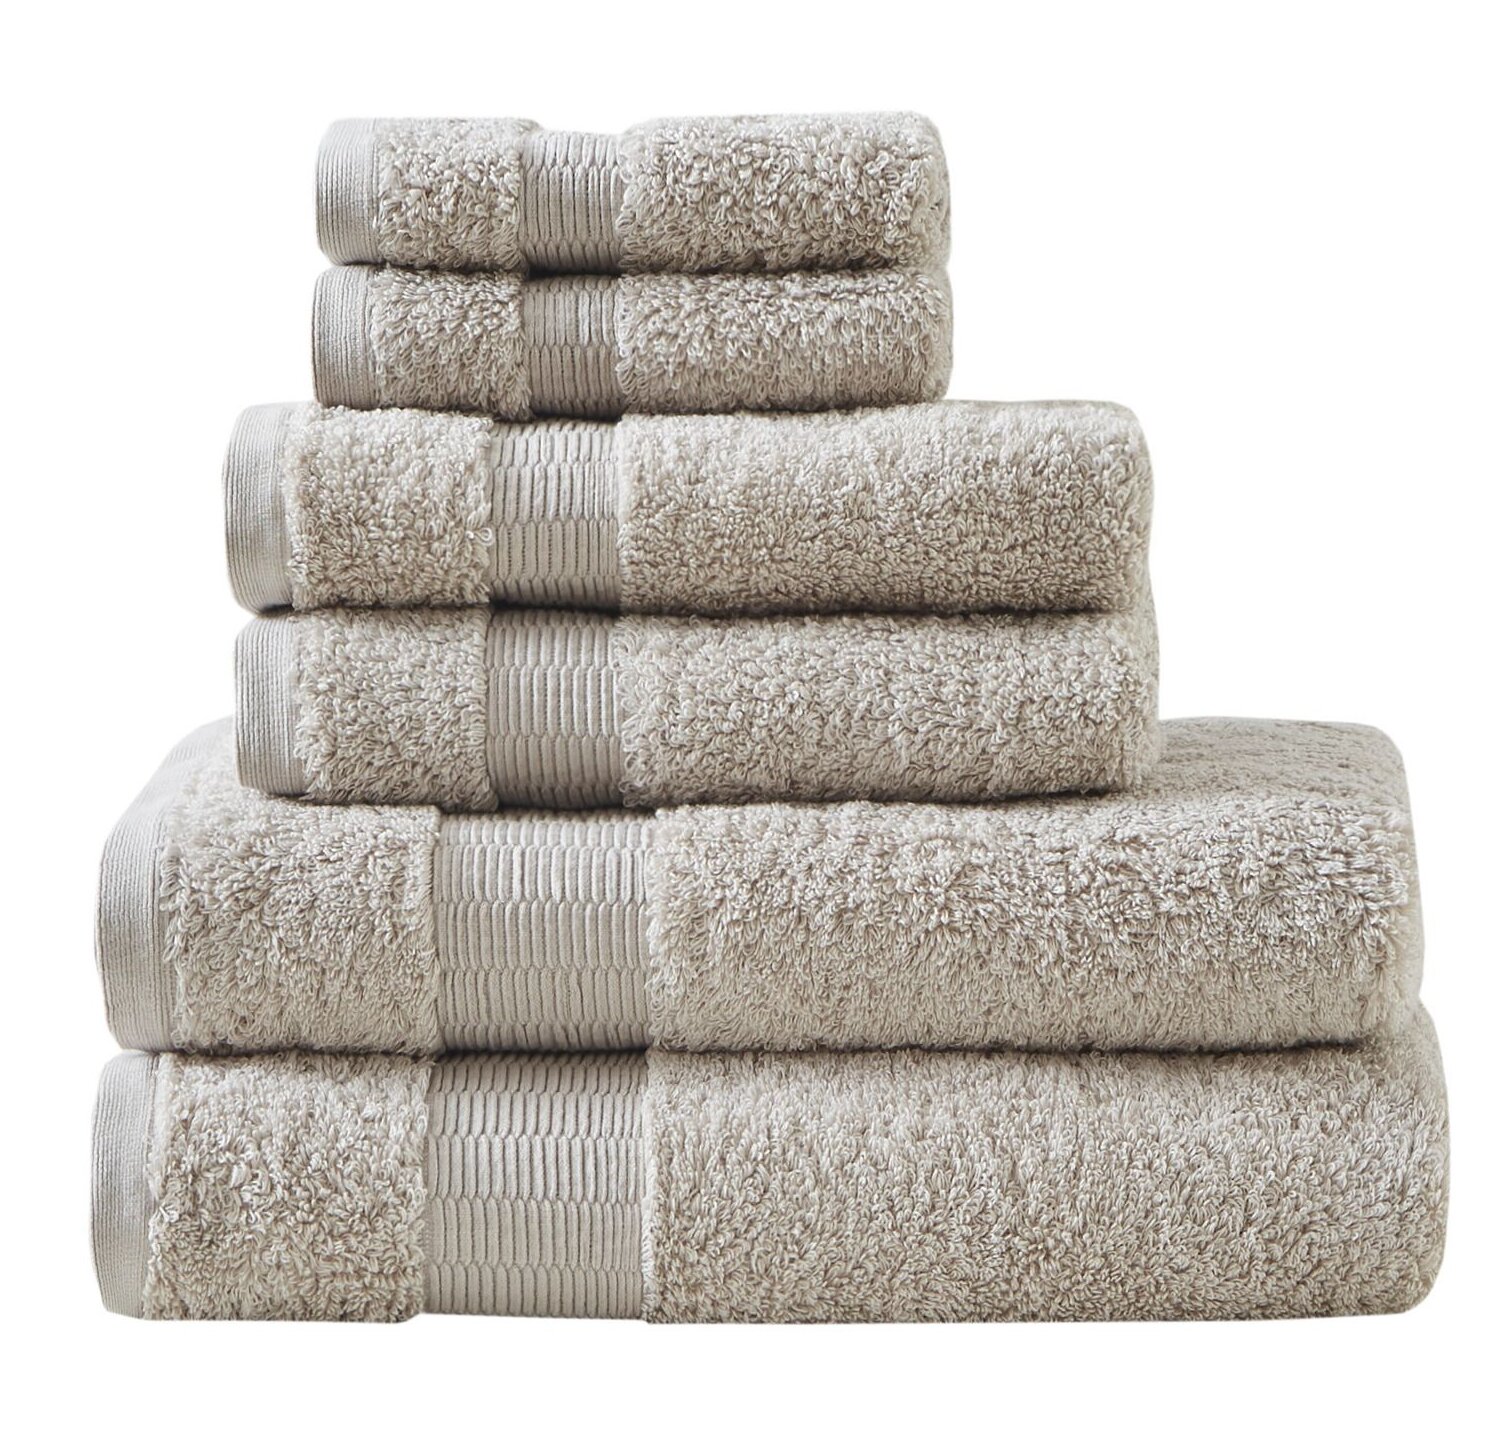 Madison Park Signature 800GSM Cotton 8 Piece Towel Set